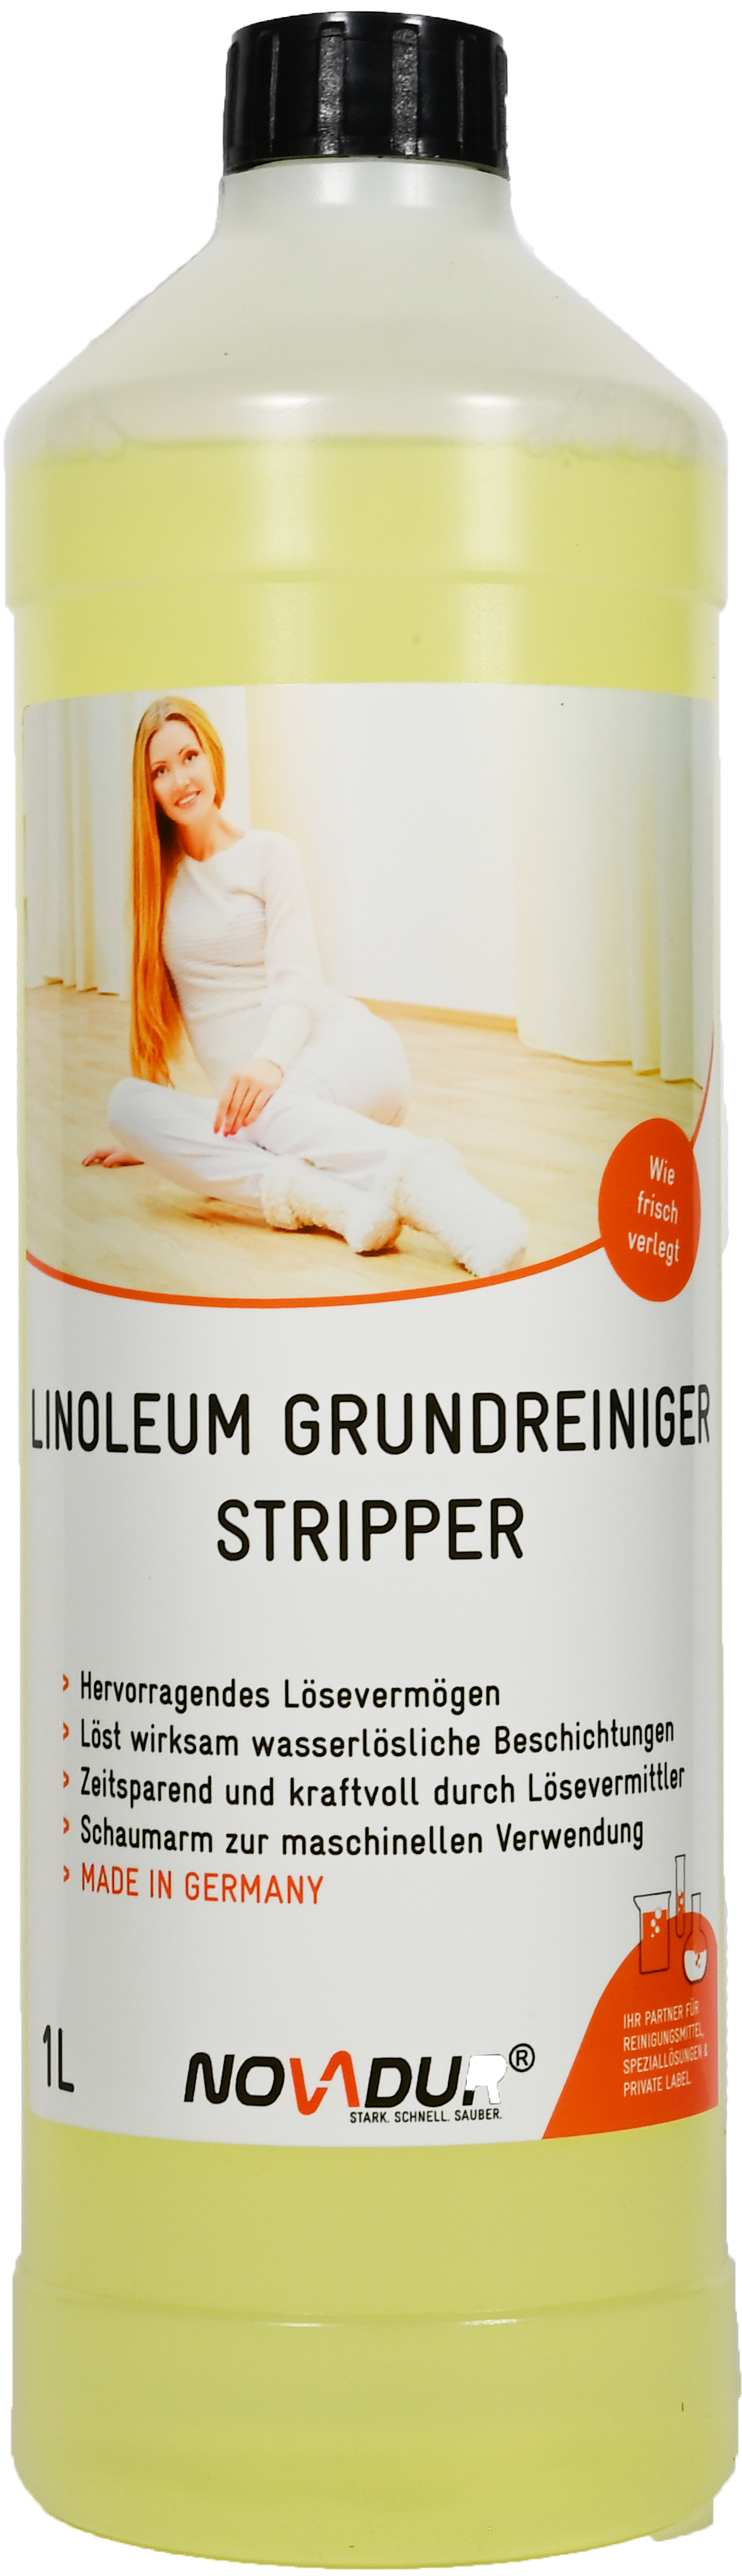 Linoleum Grundreiniger Stripper